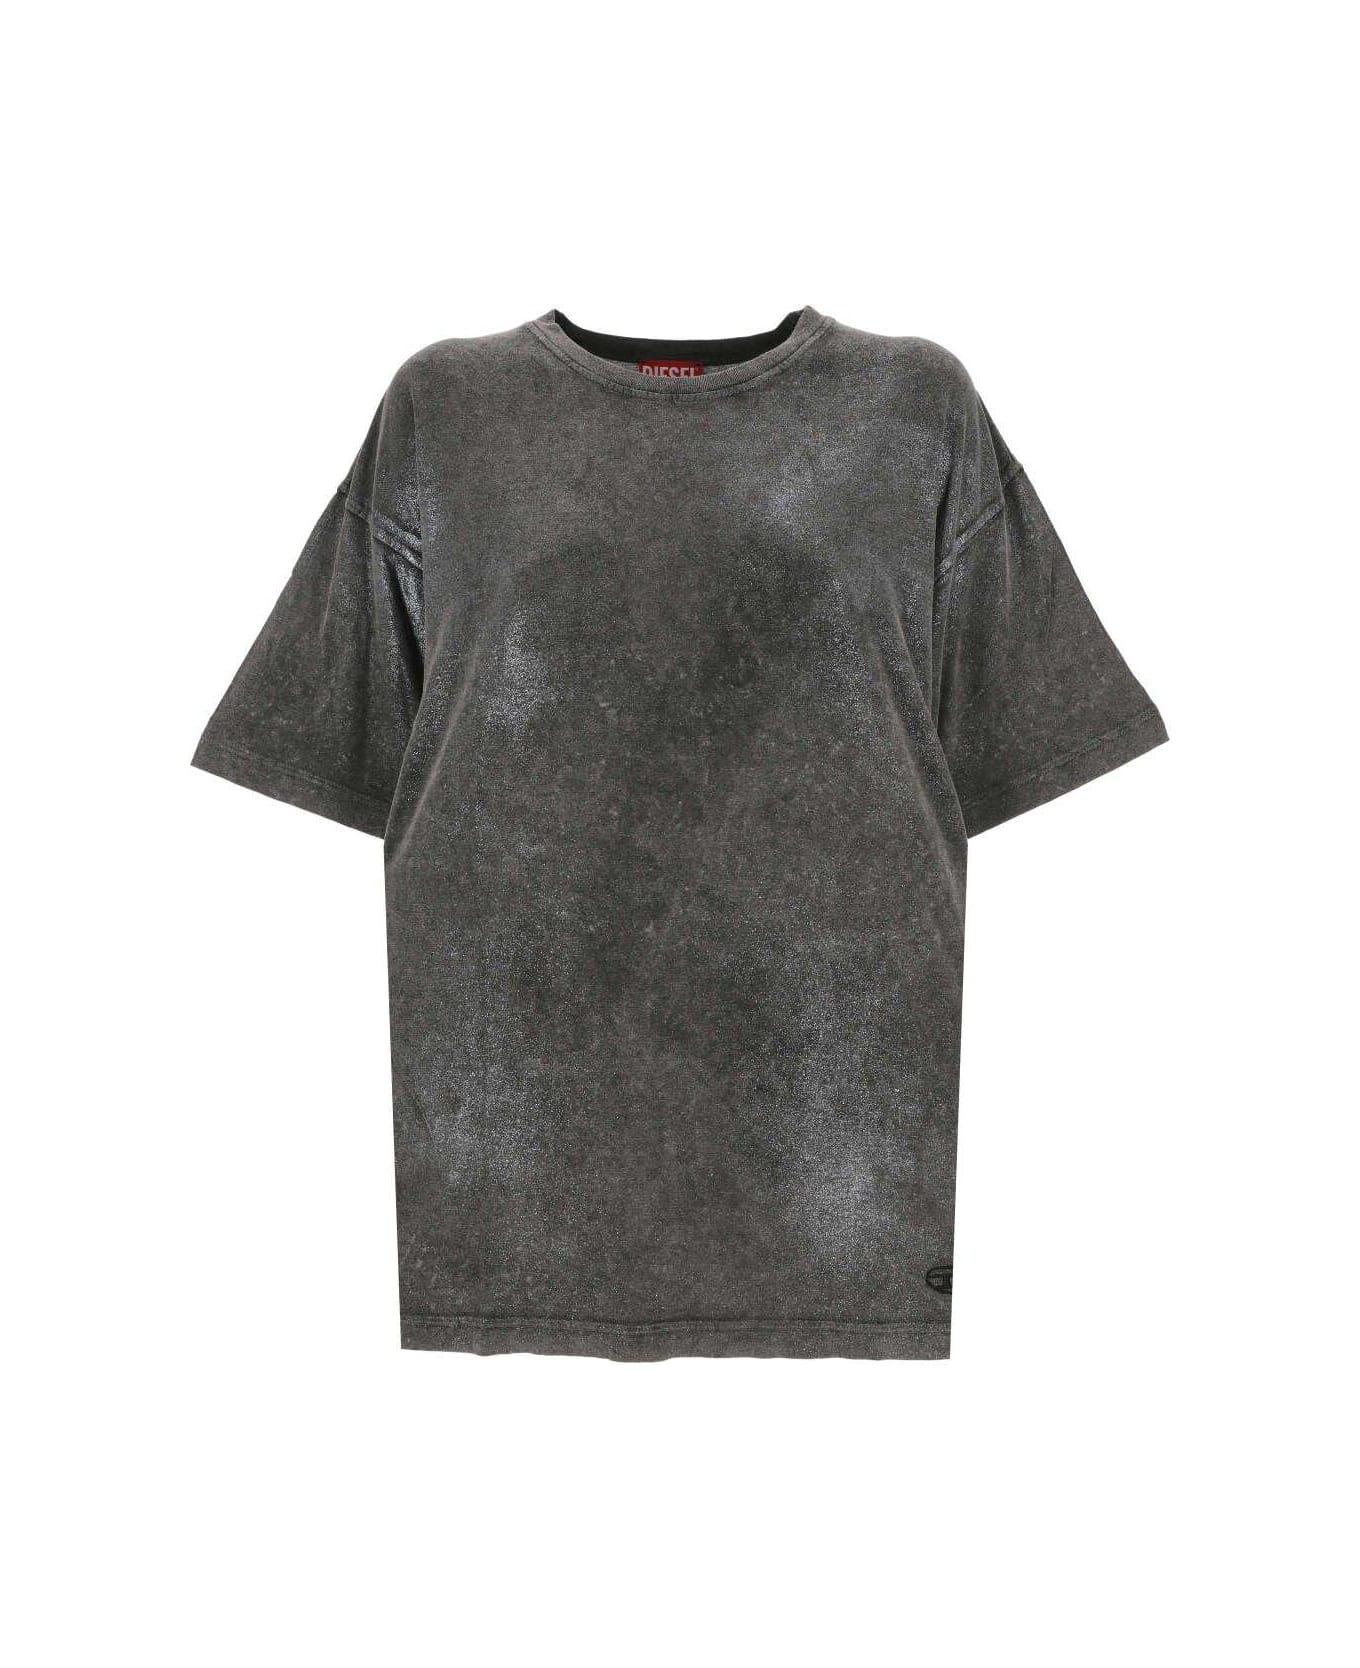 Diesel T-buxt Faded Metallic T-shirt - BLACK/GREY